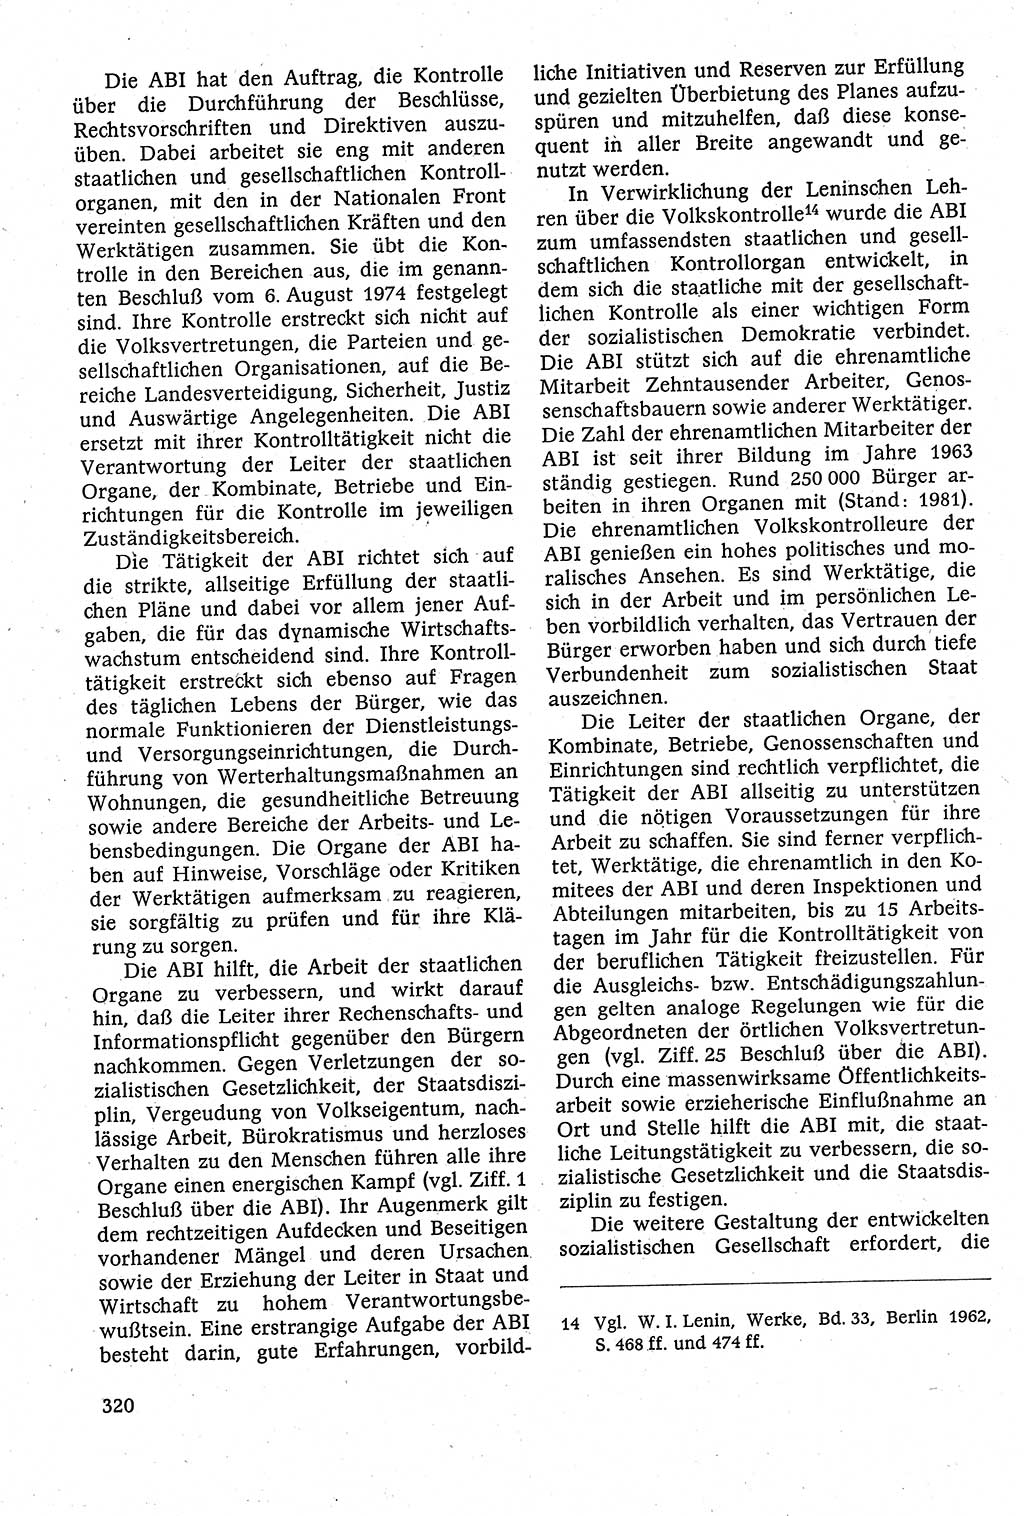 Staatsrecht der DDR [Deutsche Demokratische Republik (DDR)], Lehrbuch 1984, Seite 320 (St.-R. DDR Lb. 1984, S. 320)